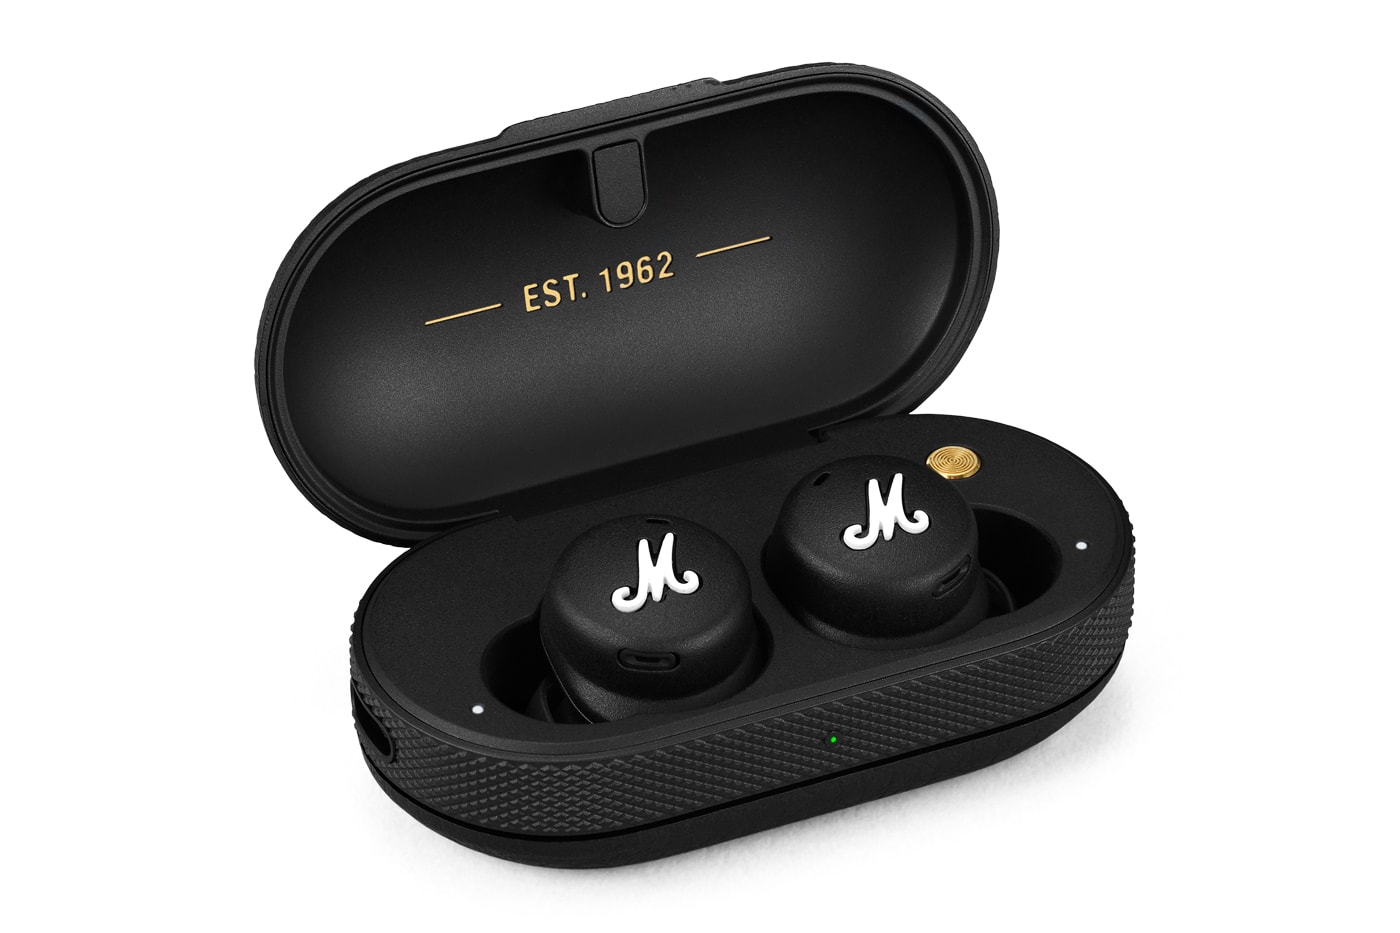 Marshall Mode II In-Ear Wireless Headphones Release